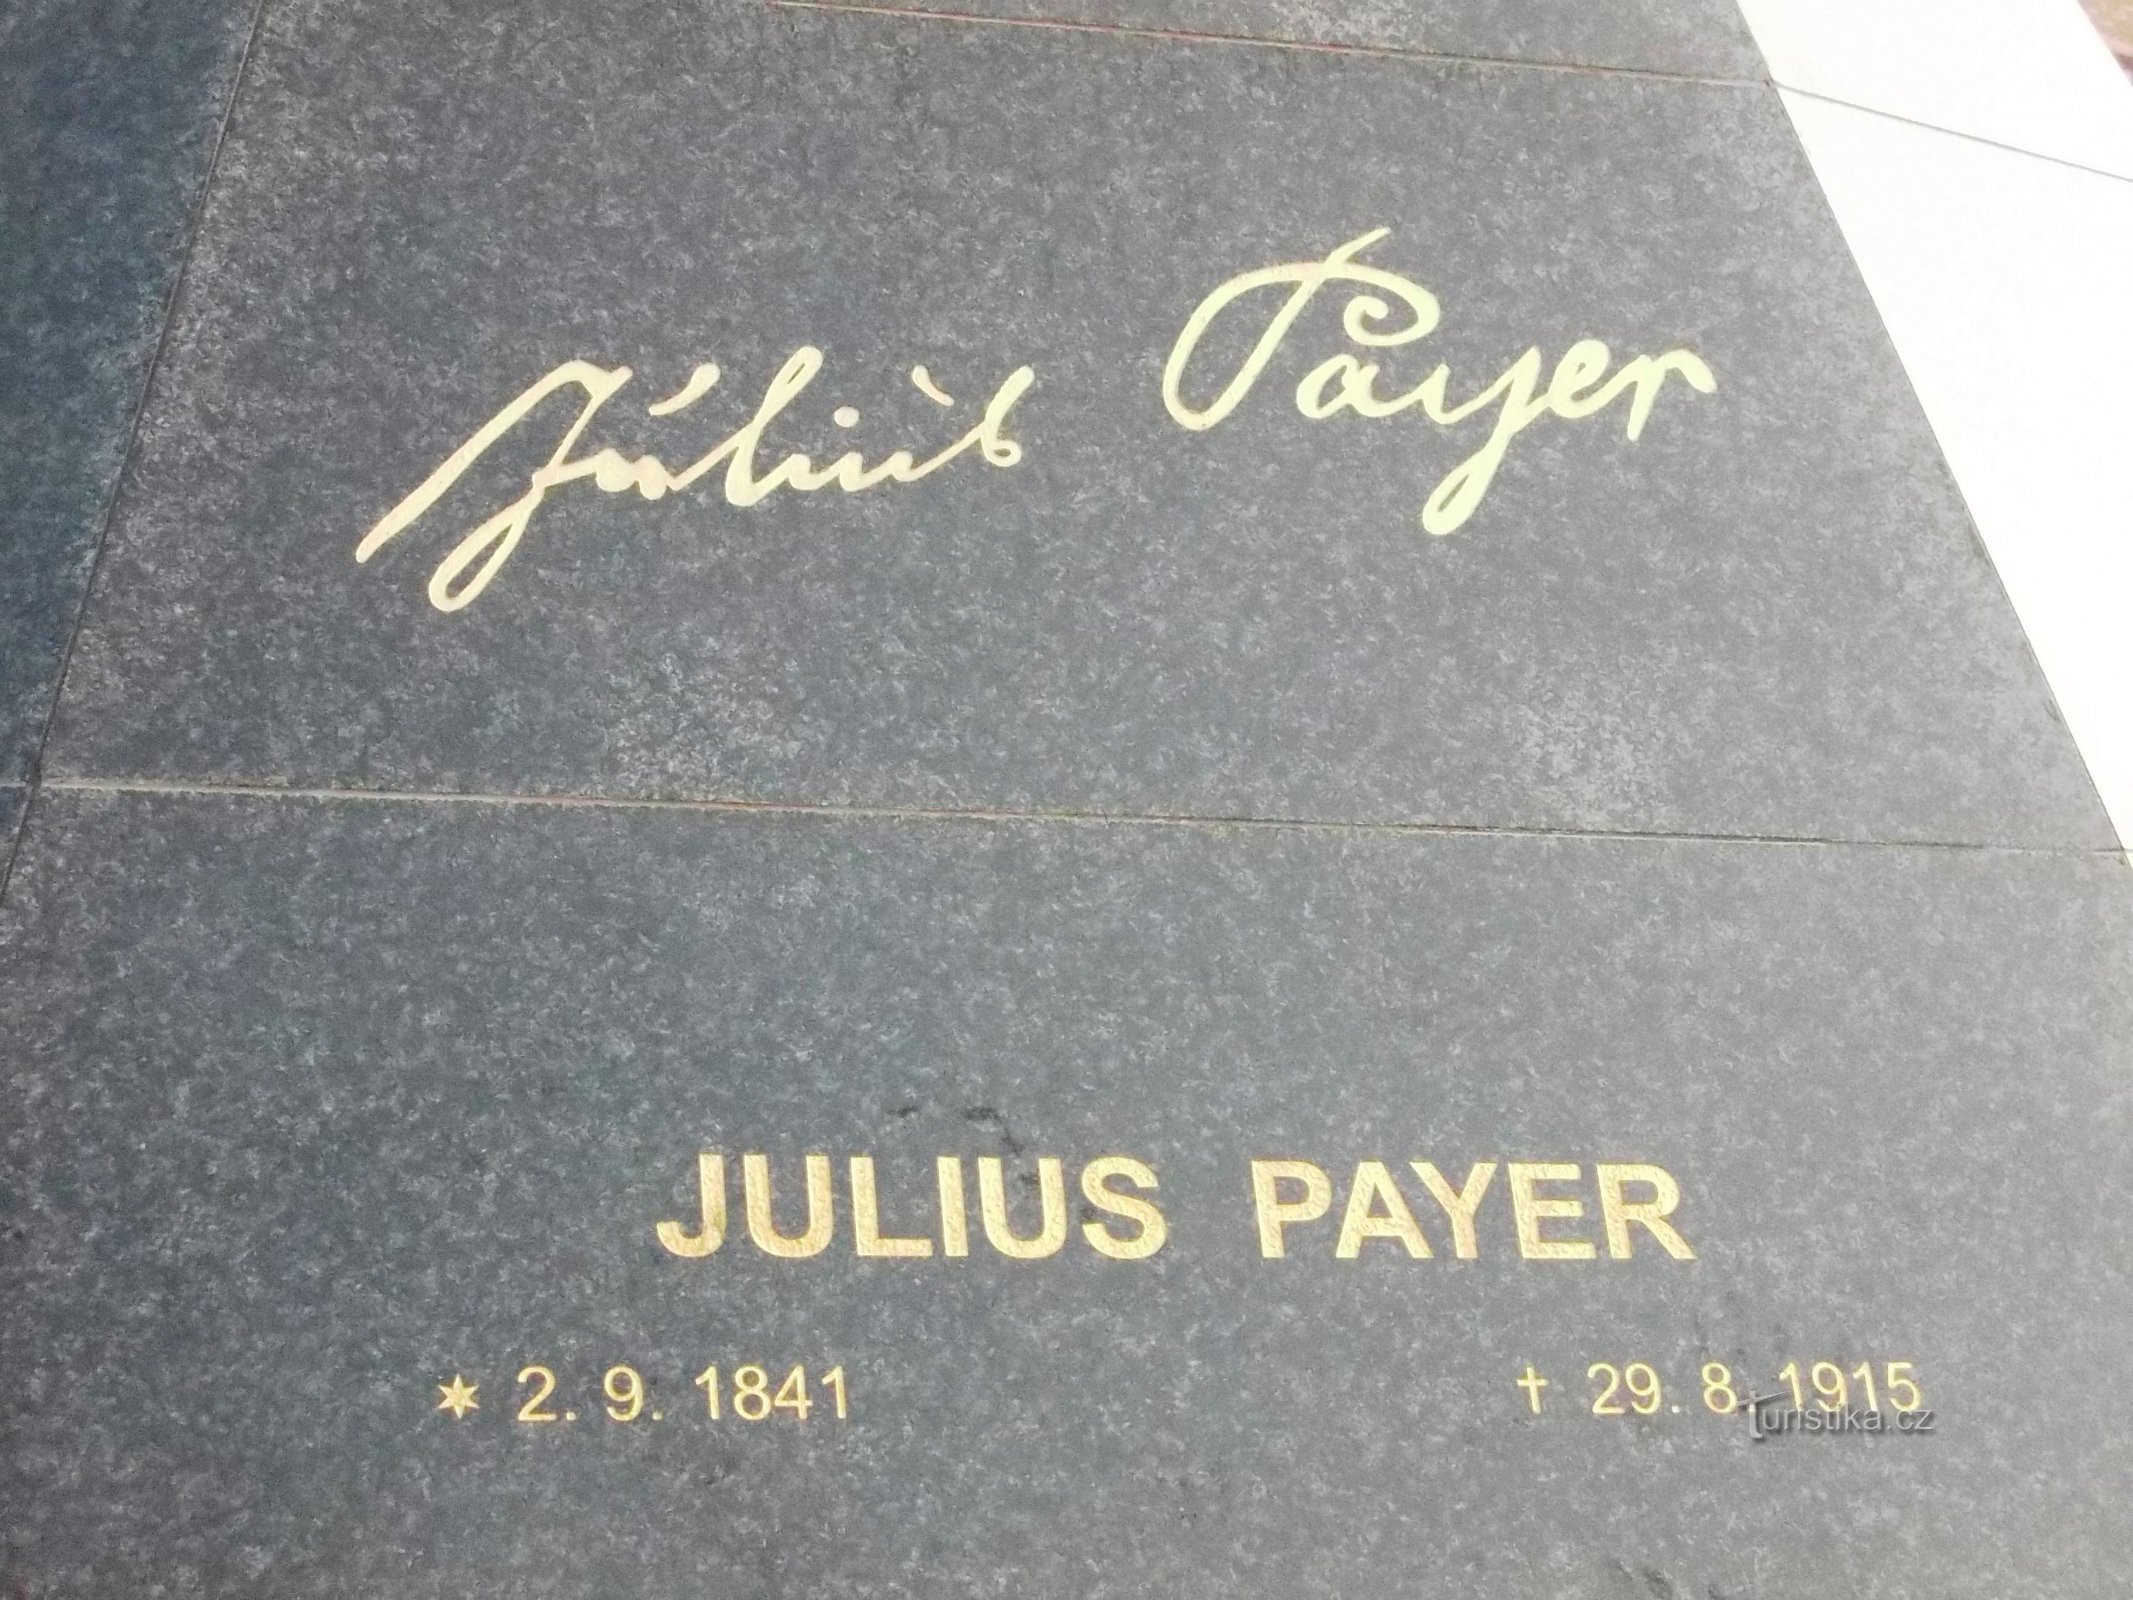 Julius Payer a trăit în anii 1841 - 1915